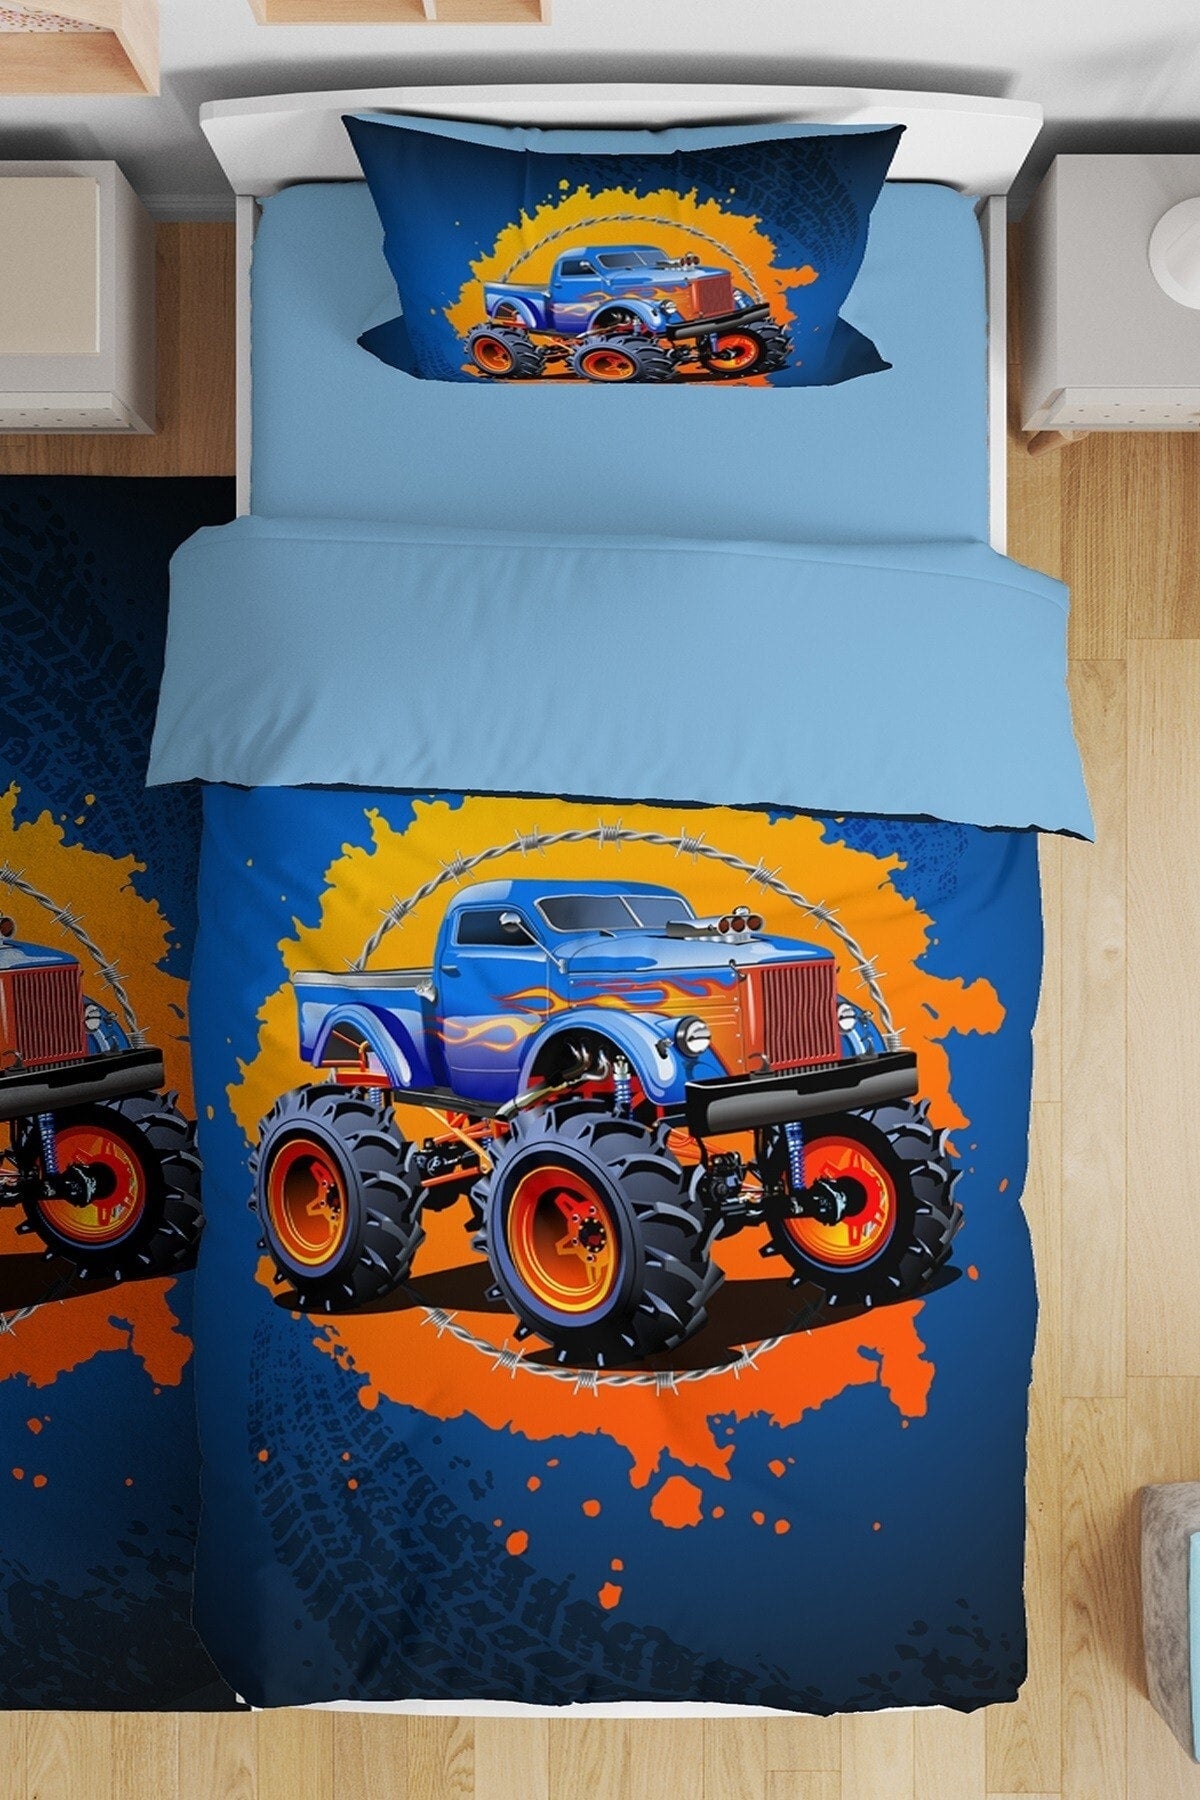 Blue Fire Monster Truck Patterned Single Baby Kids Duvet Cover Set